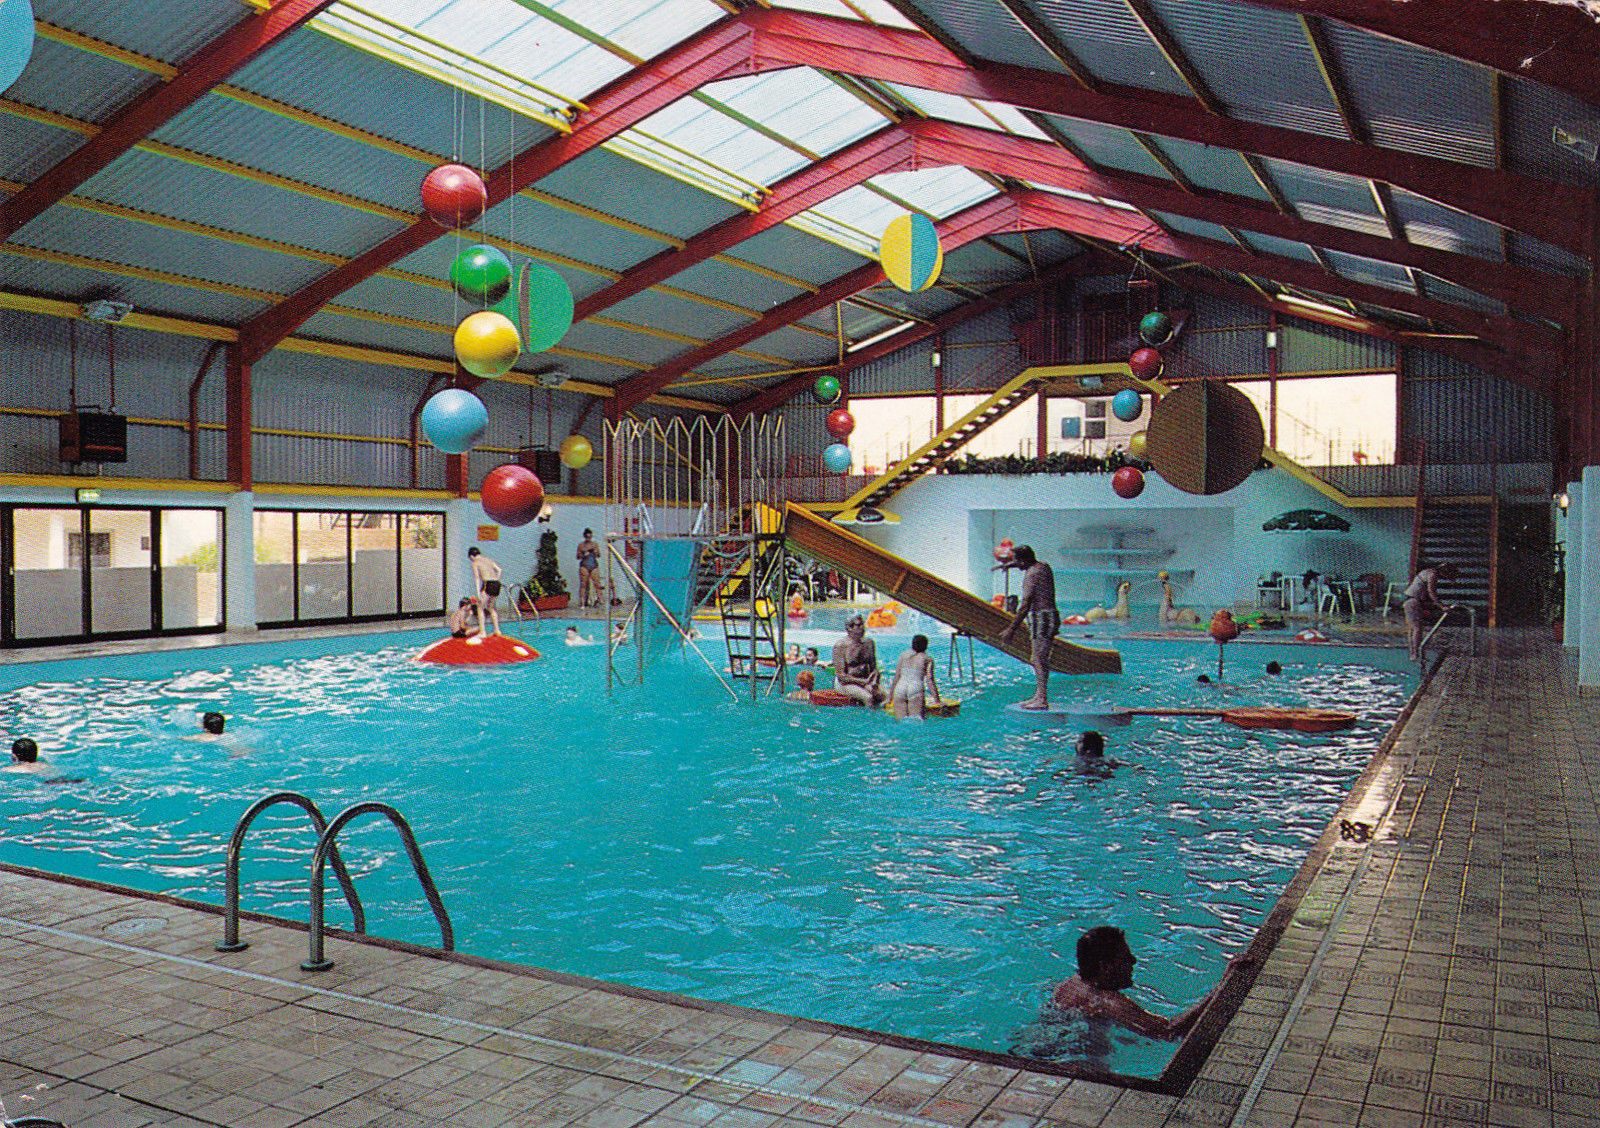 Butlins Ocean Hotel, Saltdean - Indoor Pool This shows the ...
